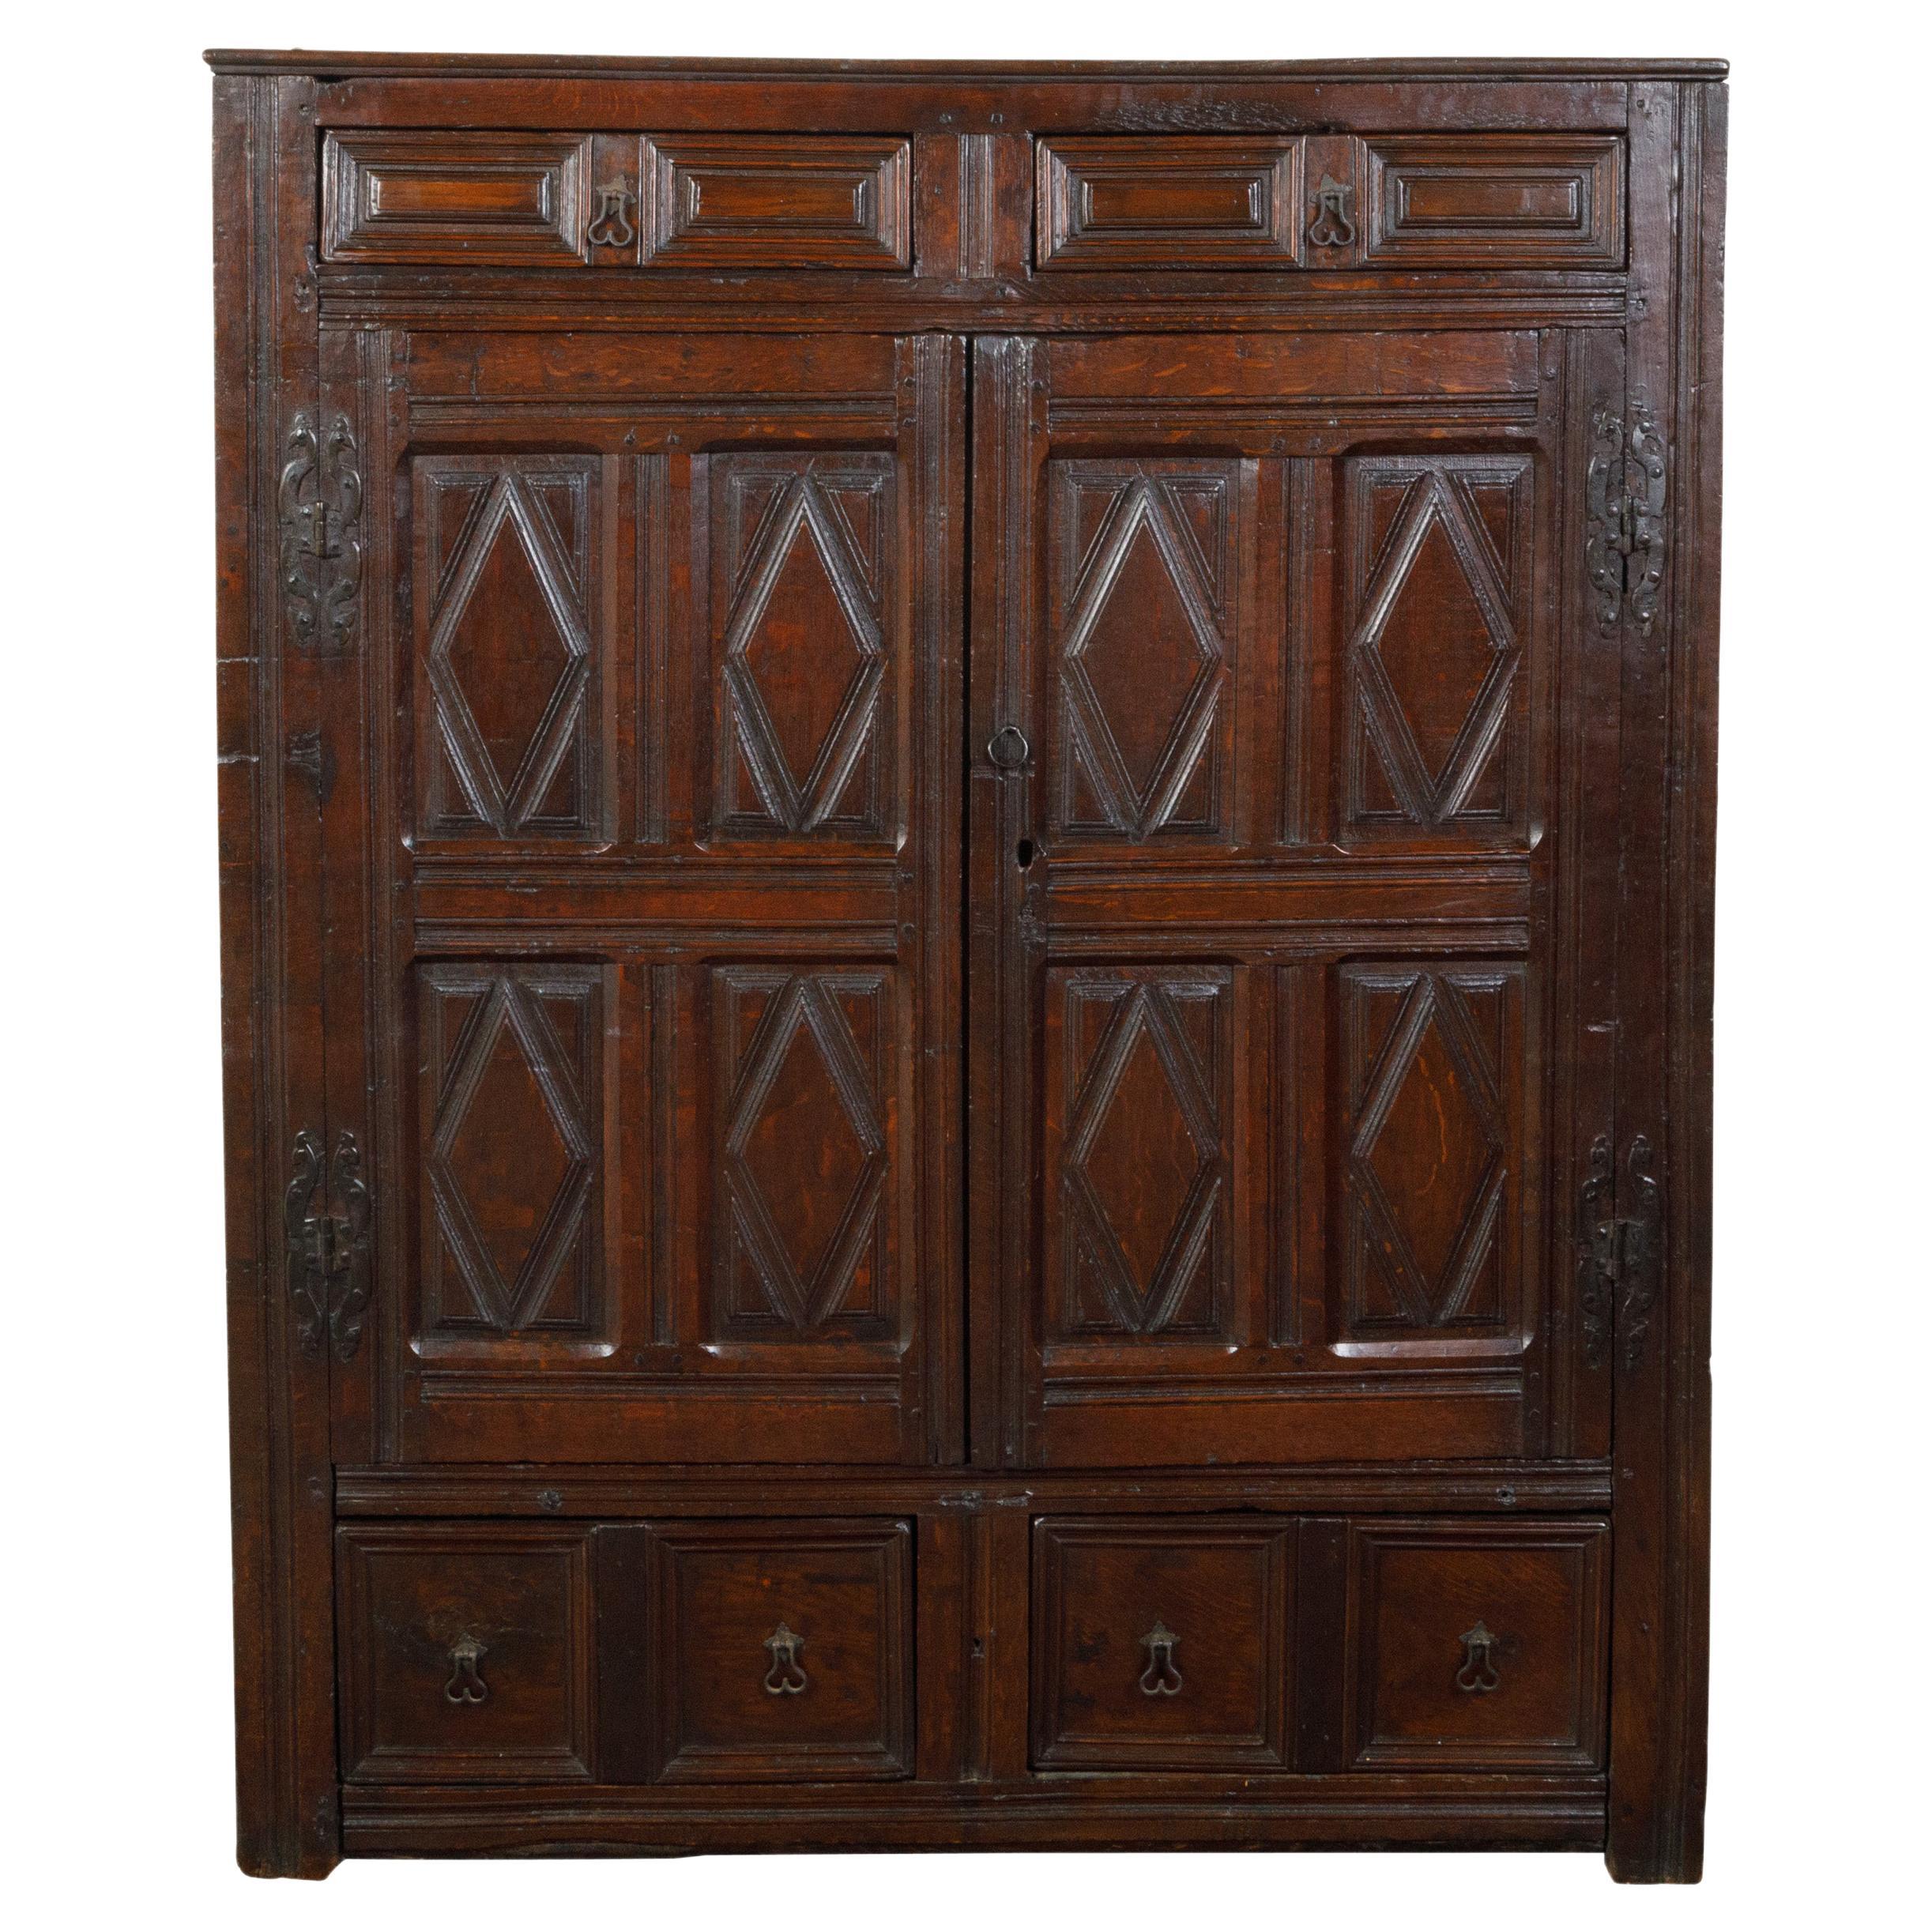 Englischer Hofschrank aus Holz mit Türen, Schubladen und Diamantmotiven aus den 1800er Jahren